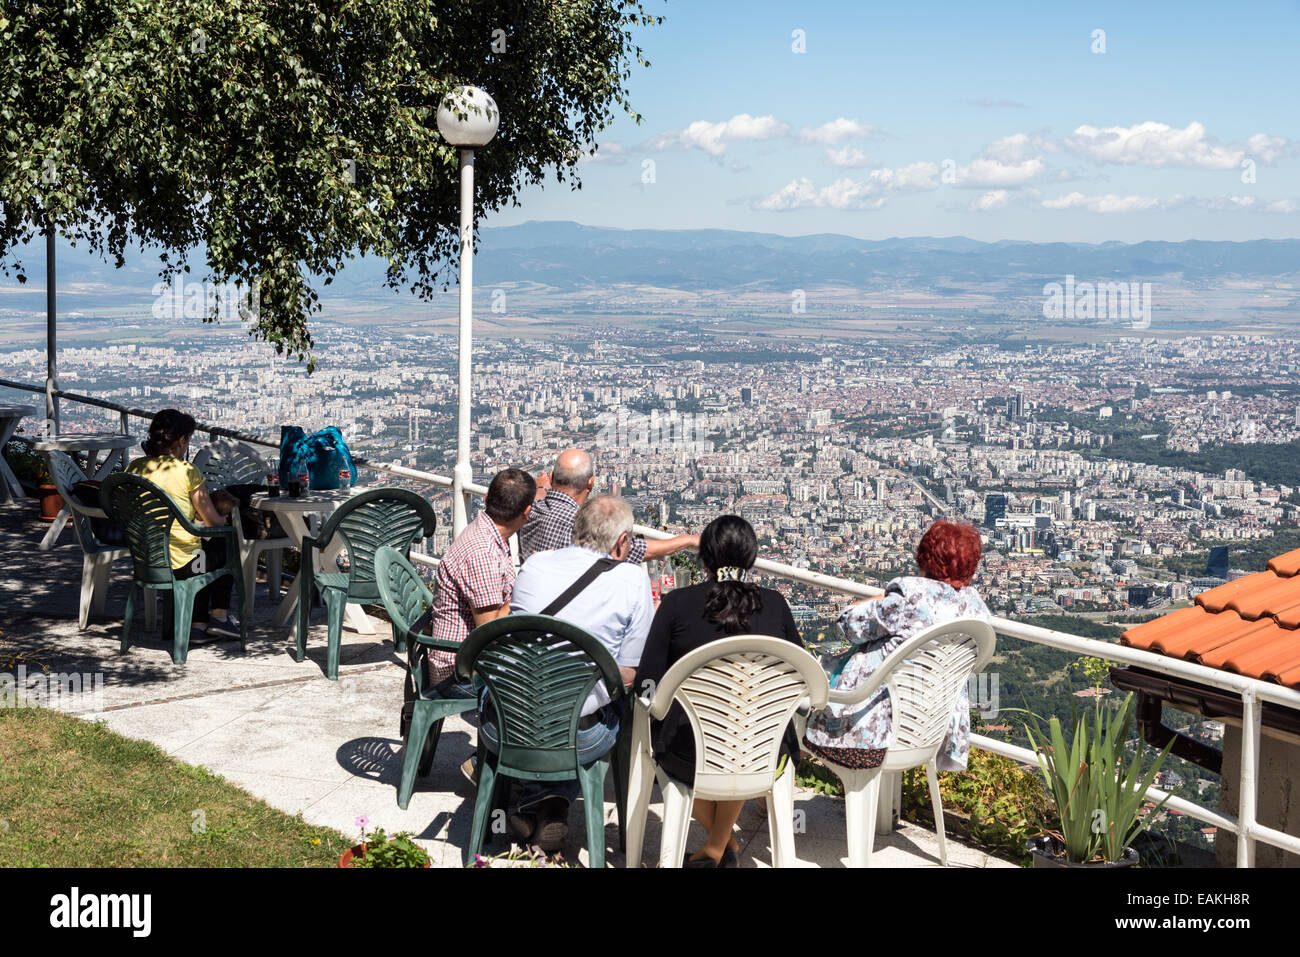 View of Sofia from cafe on Vitosha mountain, Bulgaria Stock Photo